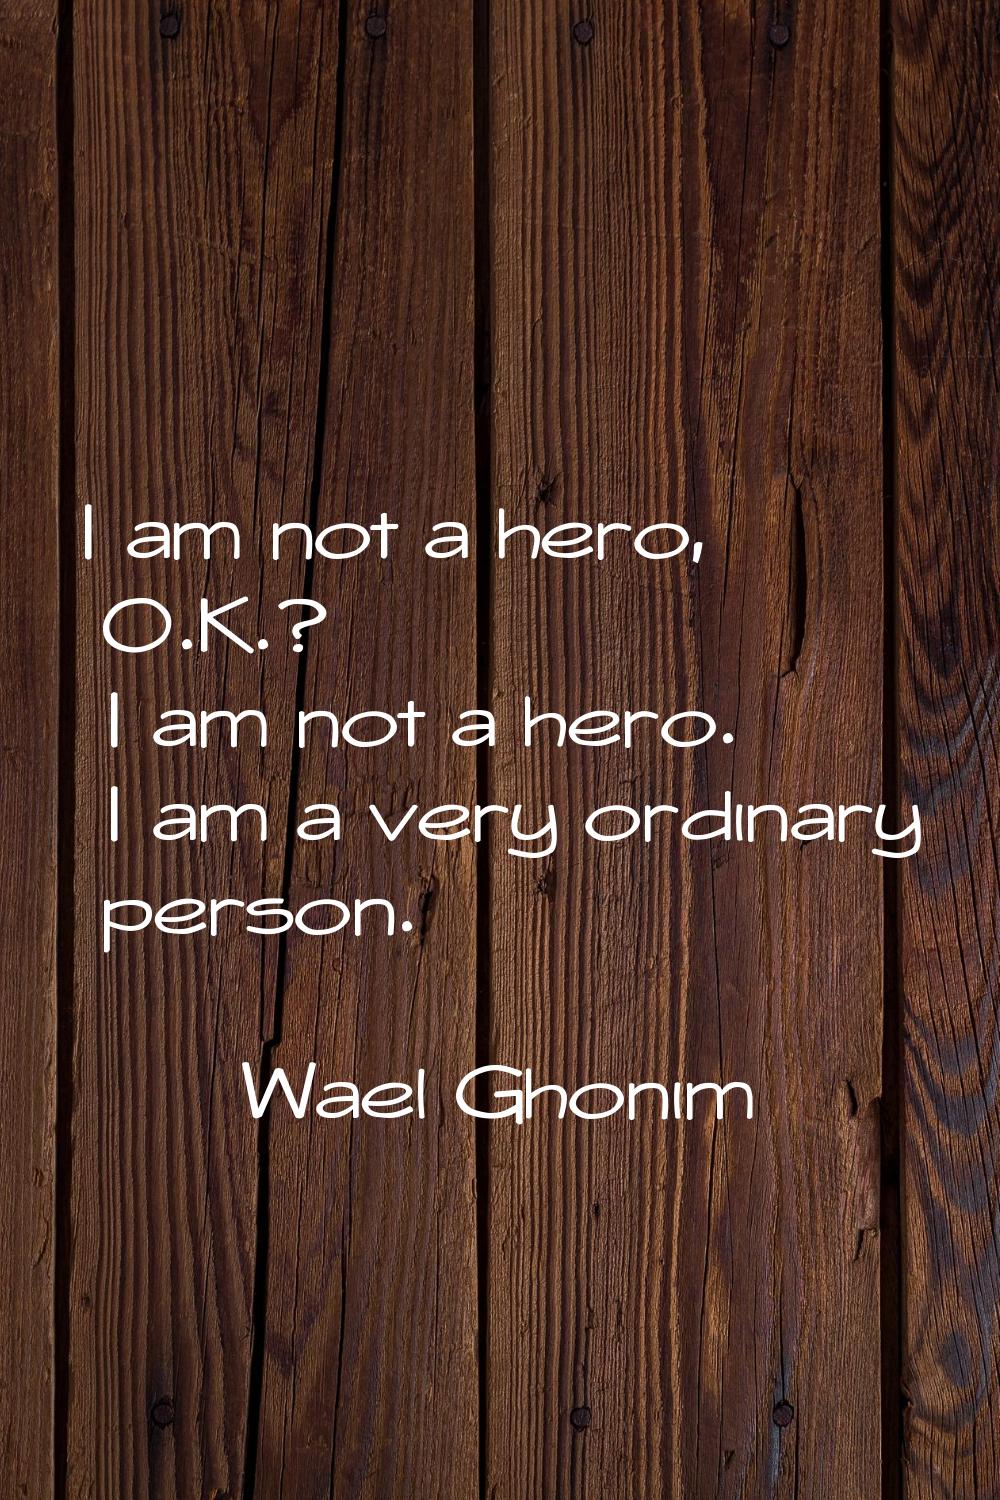 I am not a hero, O.K.? I am not a hero. I am a very ordinary person.